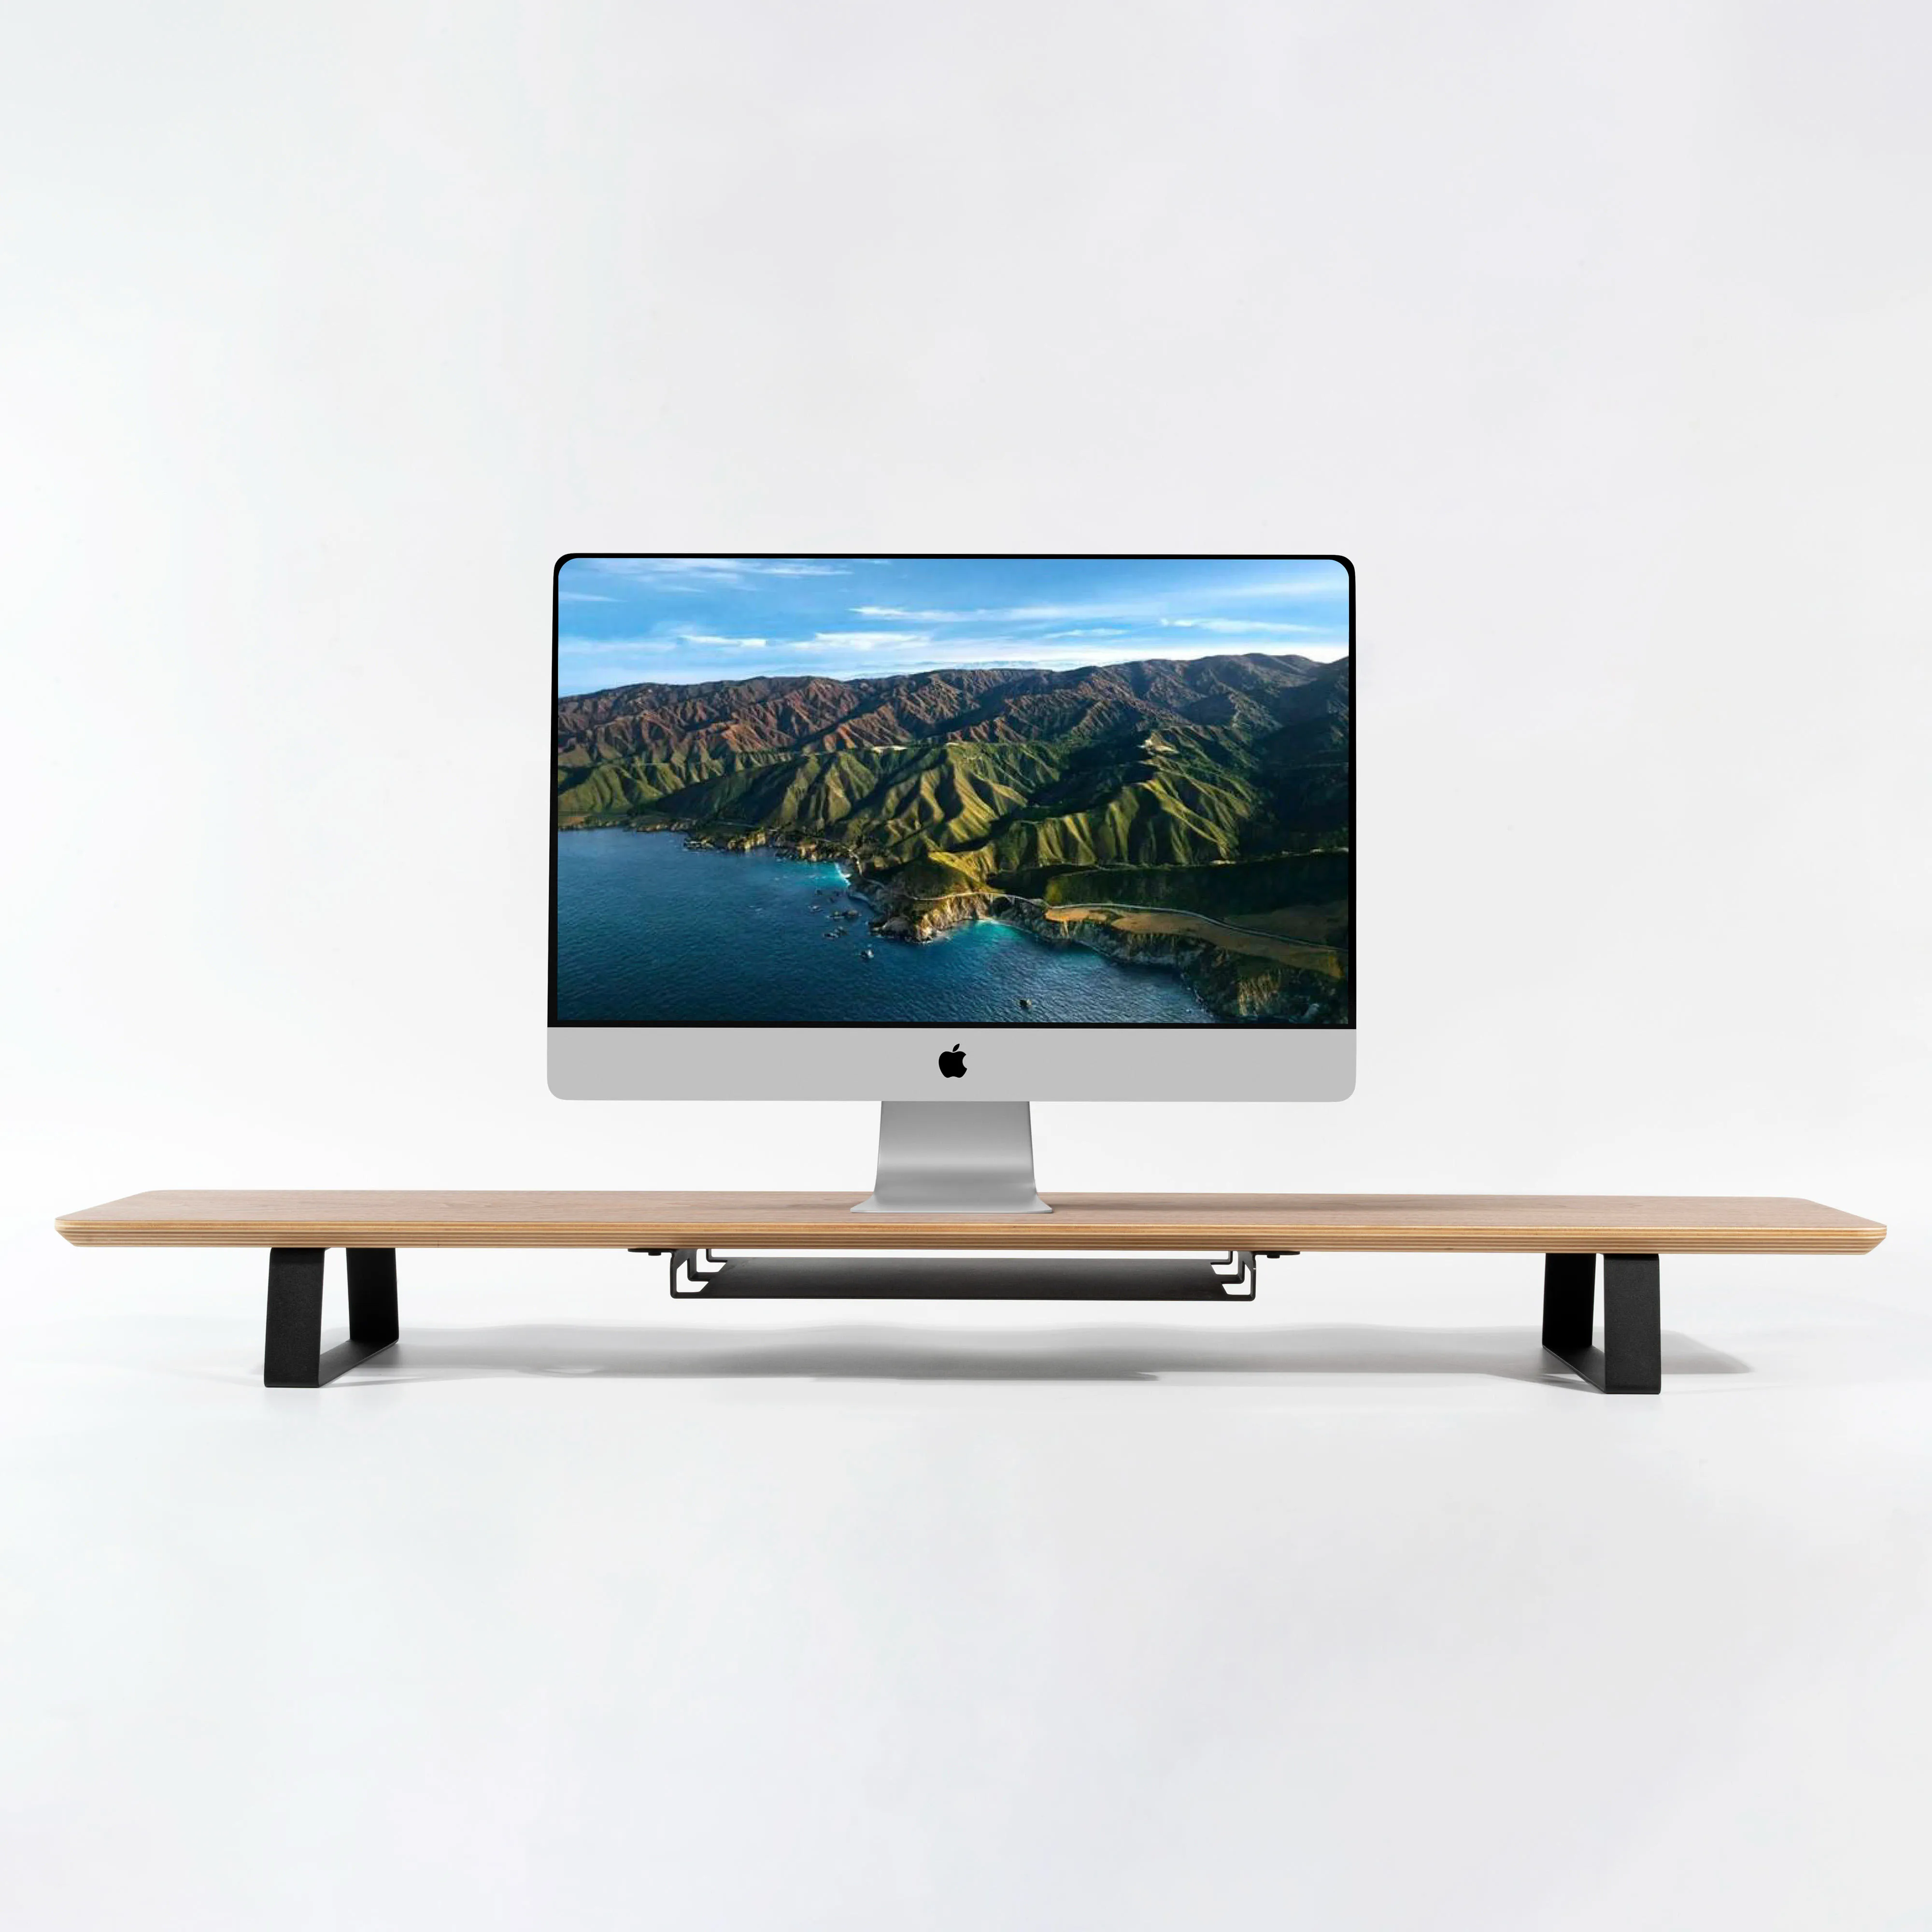 SAMDI Monitor Premium berdiri, rak meja kayu serbaguna dapat disesuaikan ruang tamu sekolah dapat diperpanjang furnitur sekolah Premium